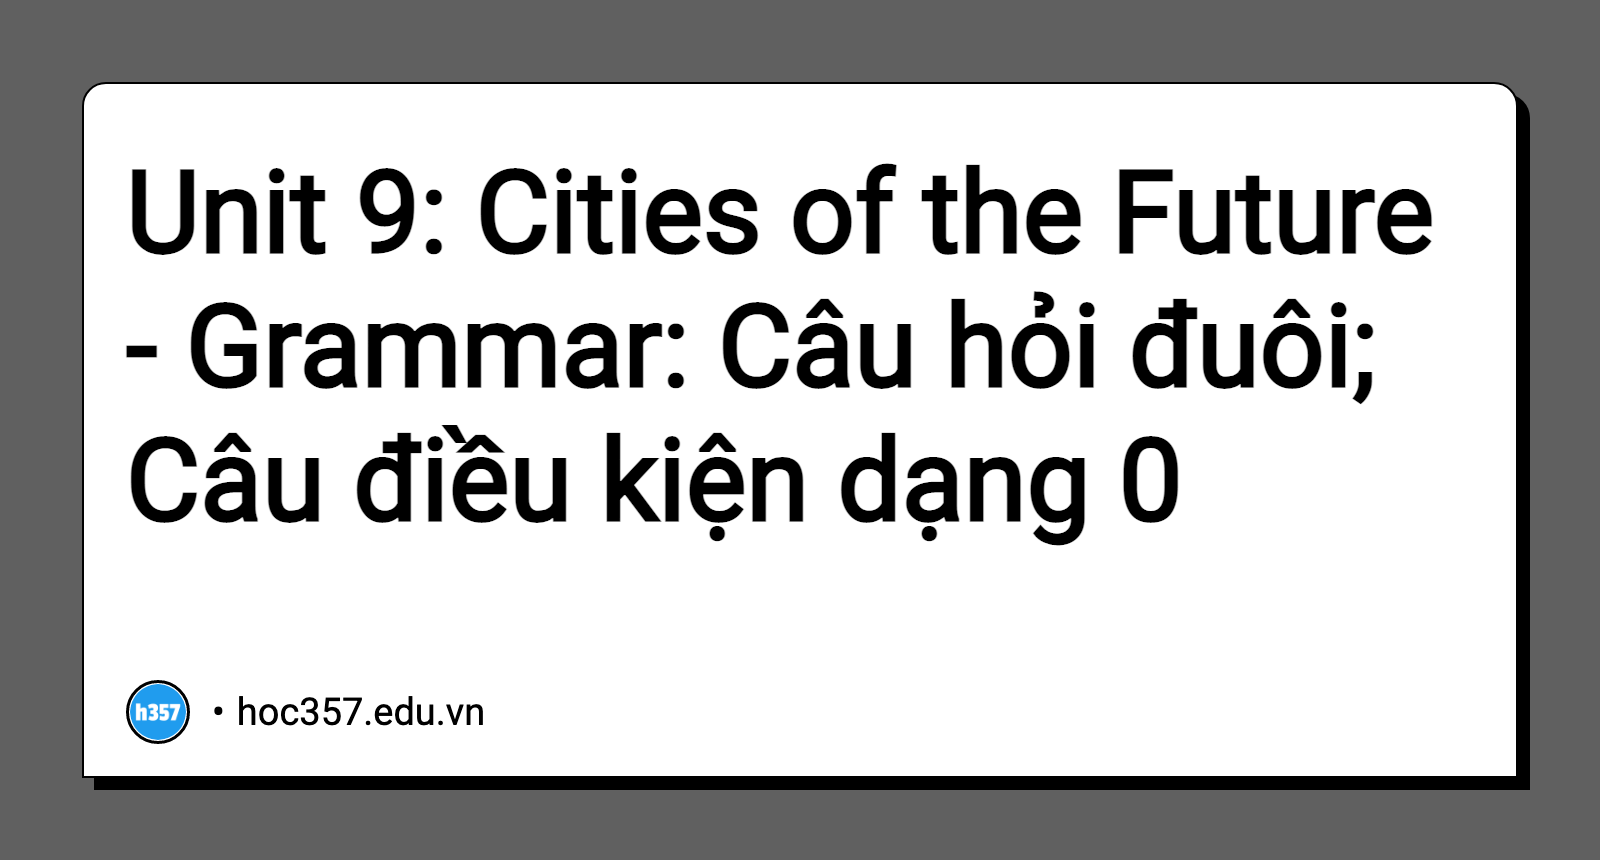 Hình minh họa Unit 9: Cities of the Future - Grammar: Câu hỏi đuôi; Câu điều kiện dạng 0